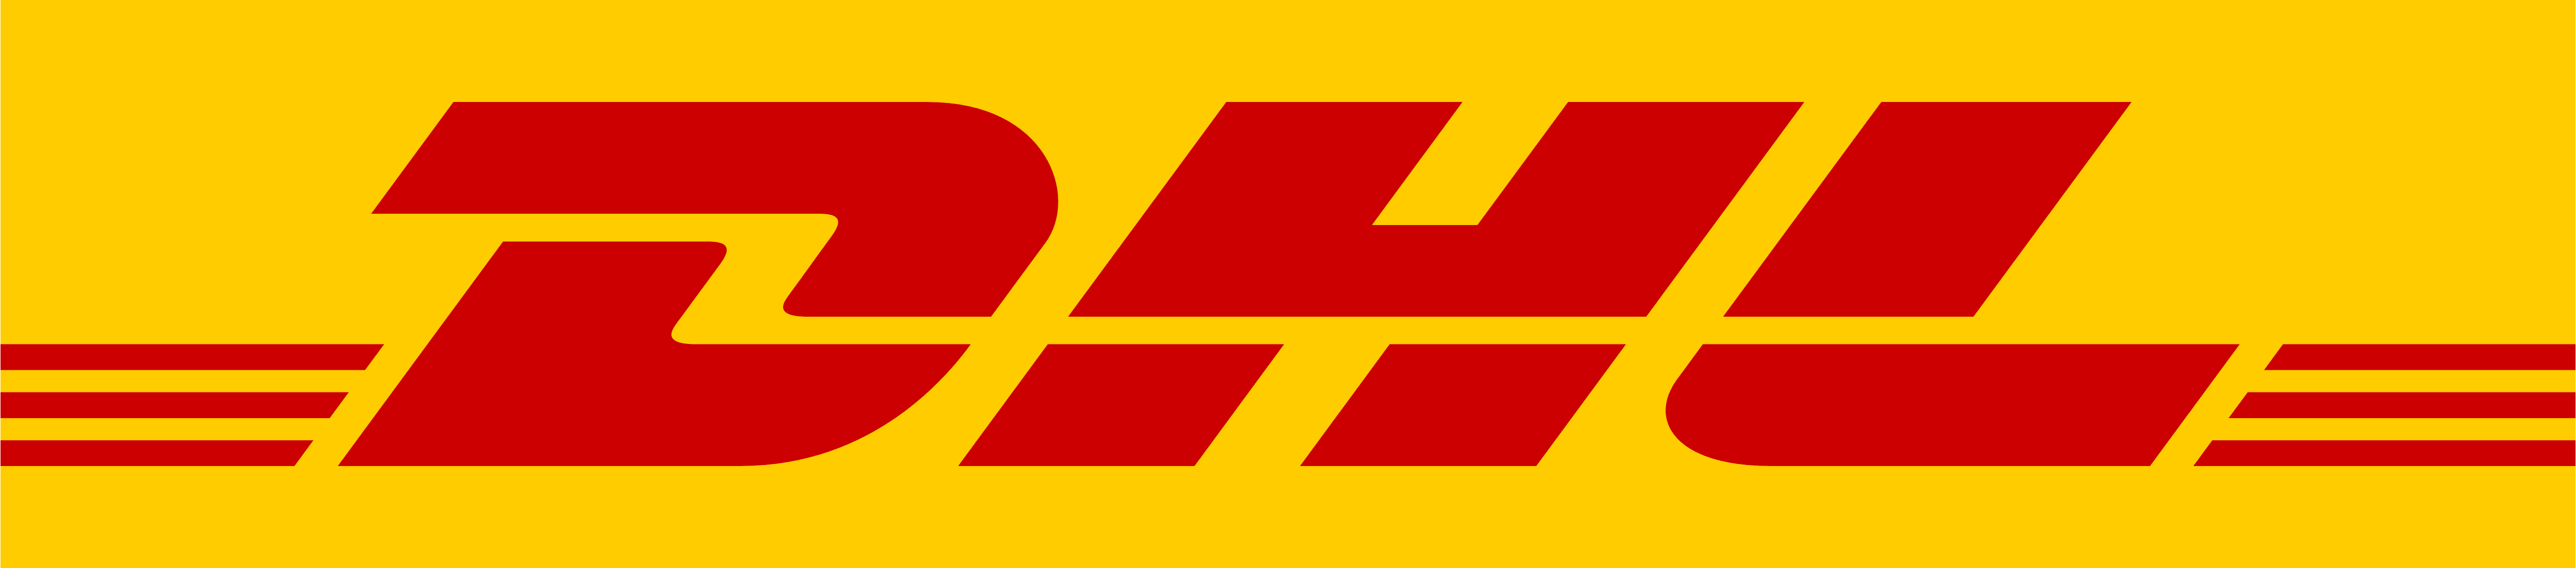 DHL Logos Download